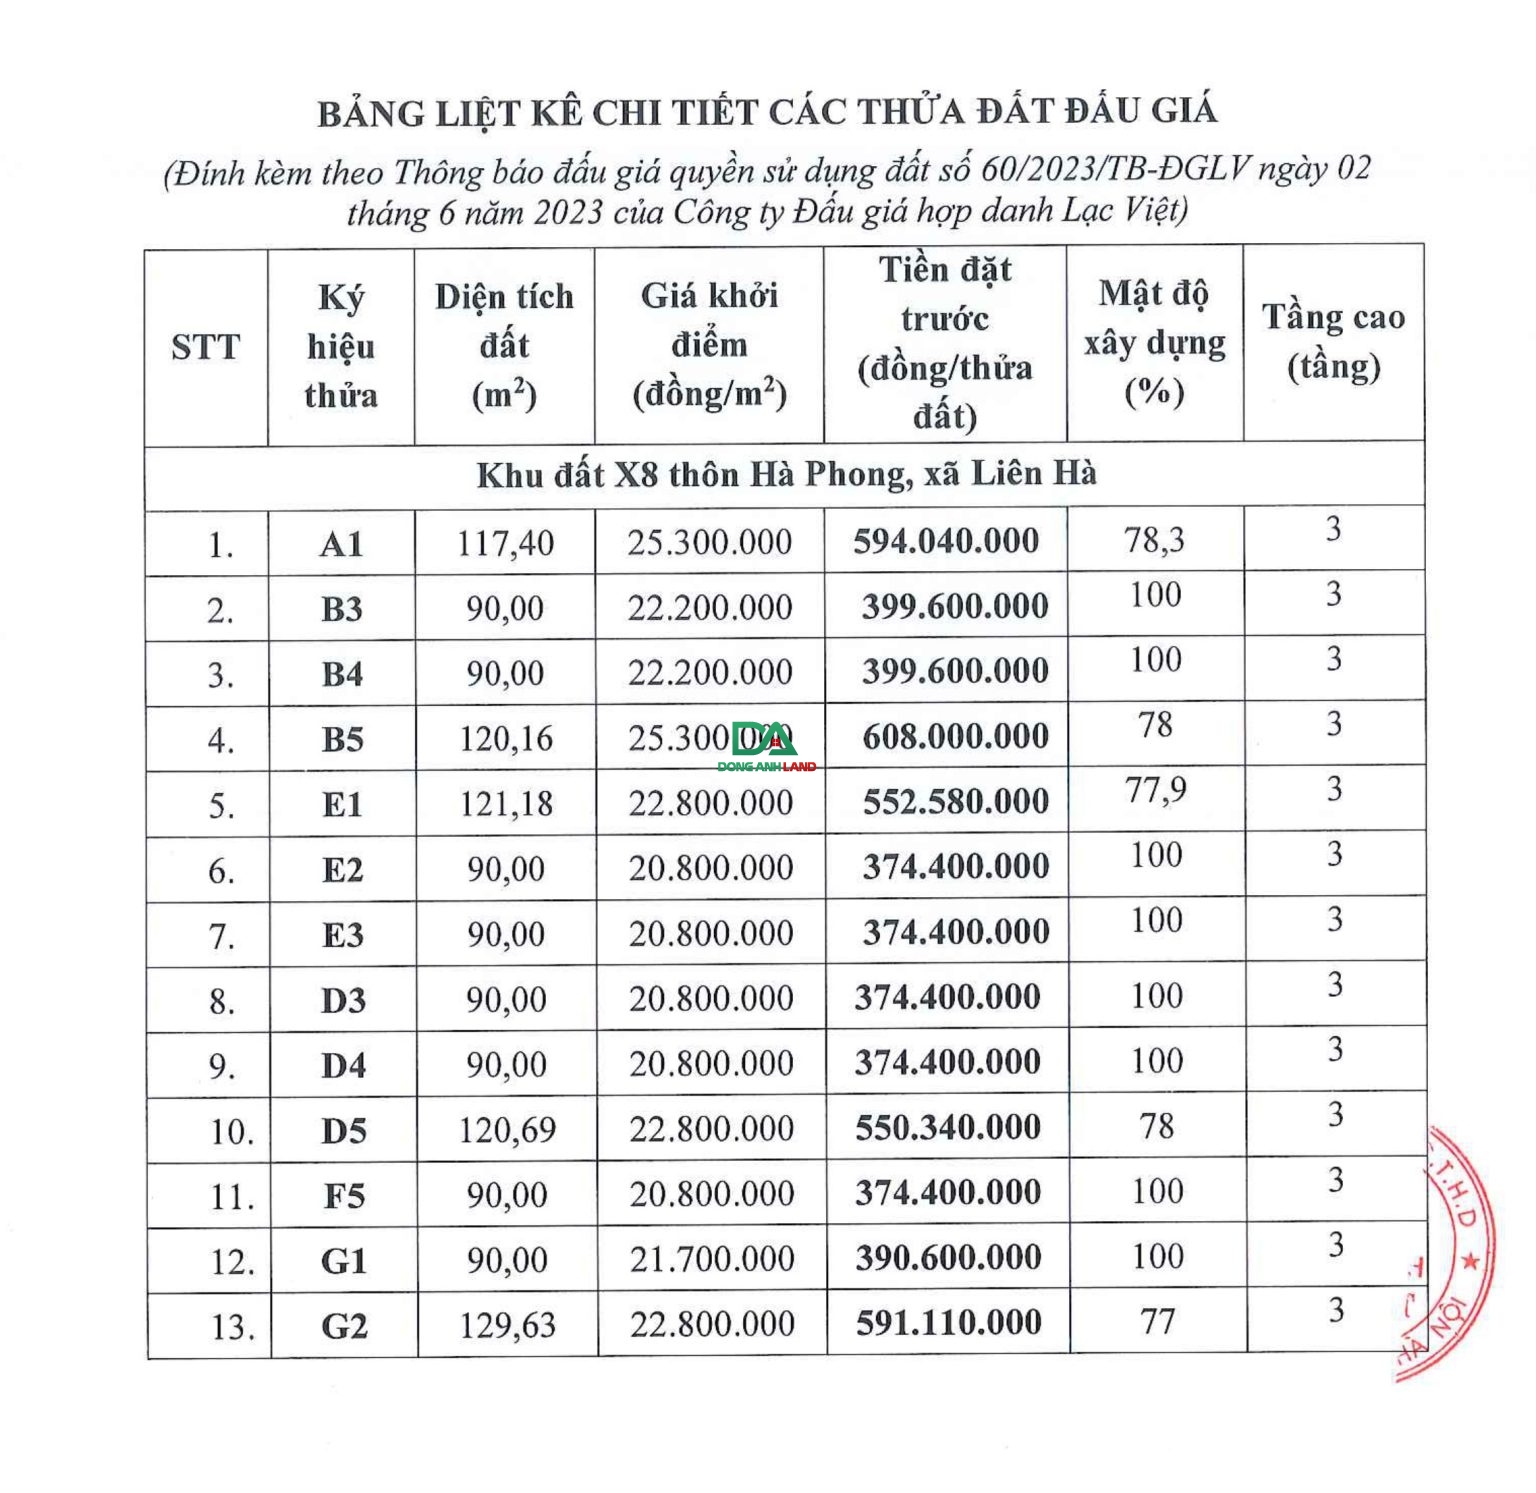 Thông báo đấu giá quyền sử dụng 13 thửa đất tại X8 thôn Hà Phong, xã Liên Hà, huyện Đông Anh (đợt 3).